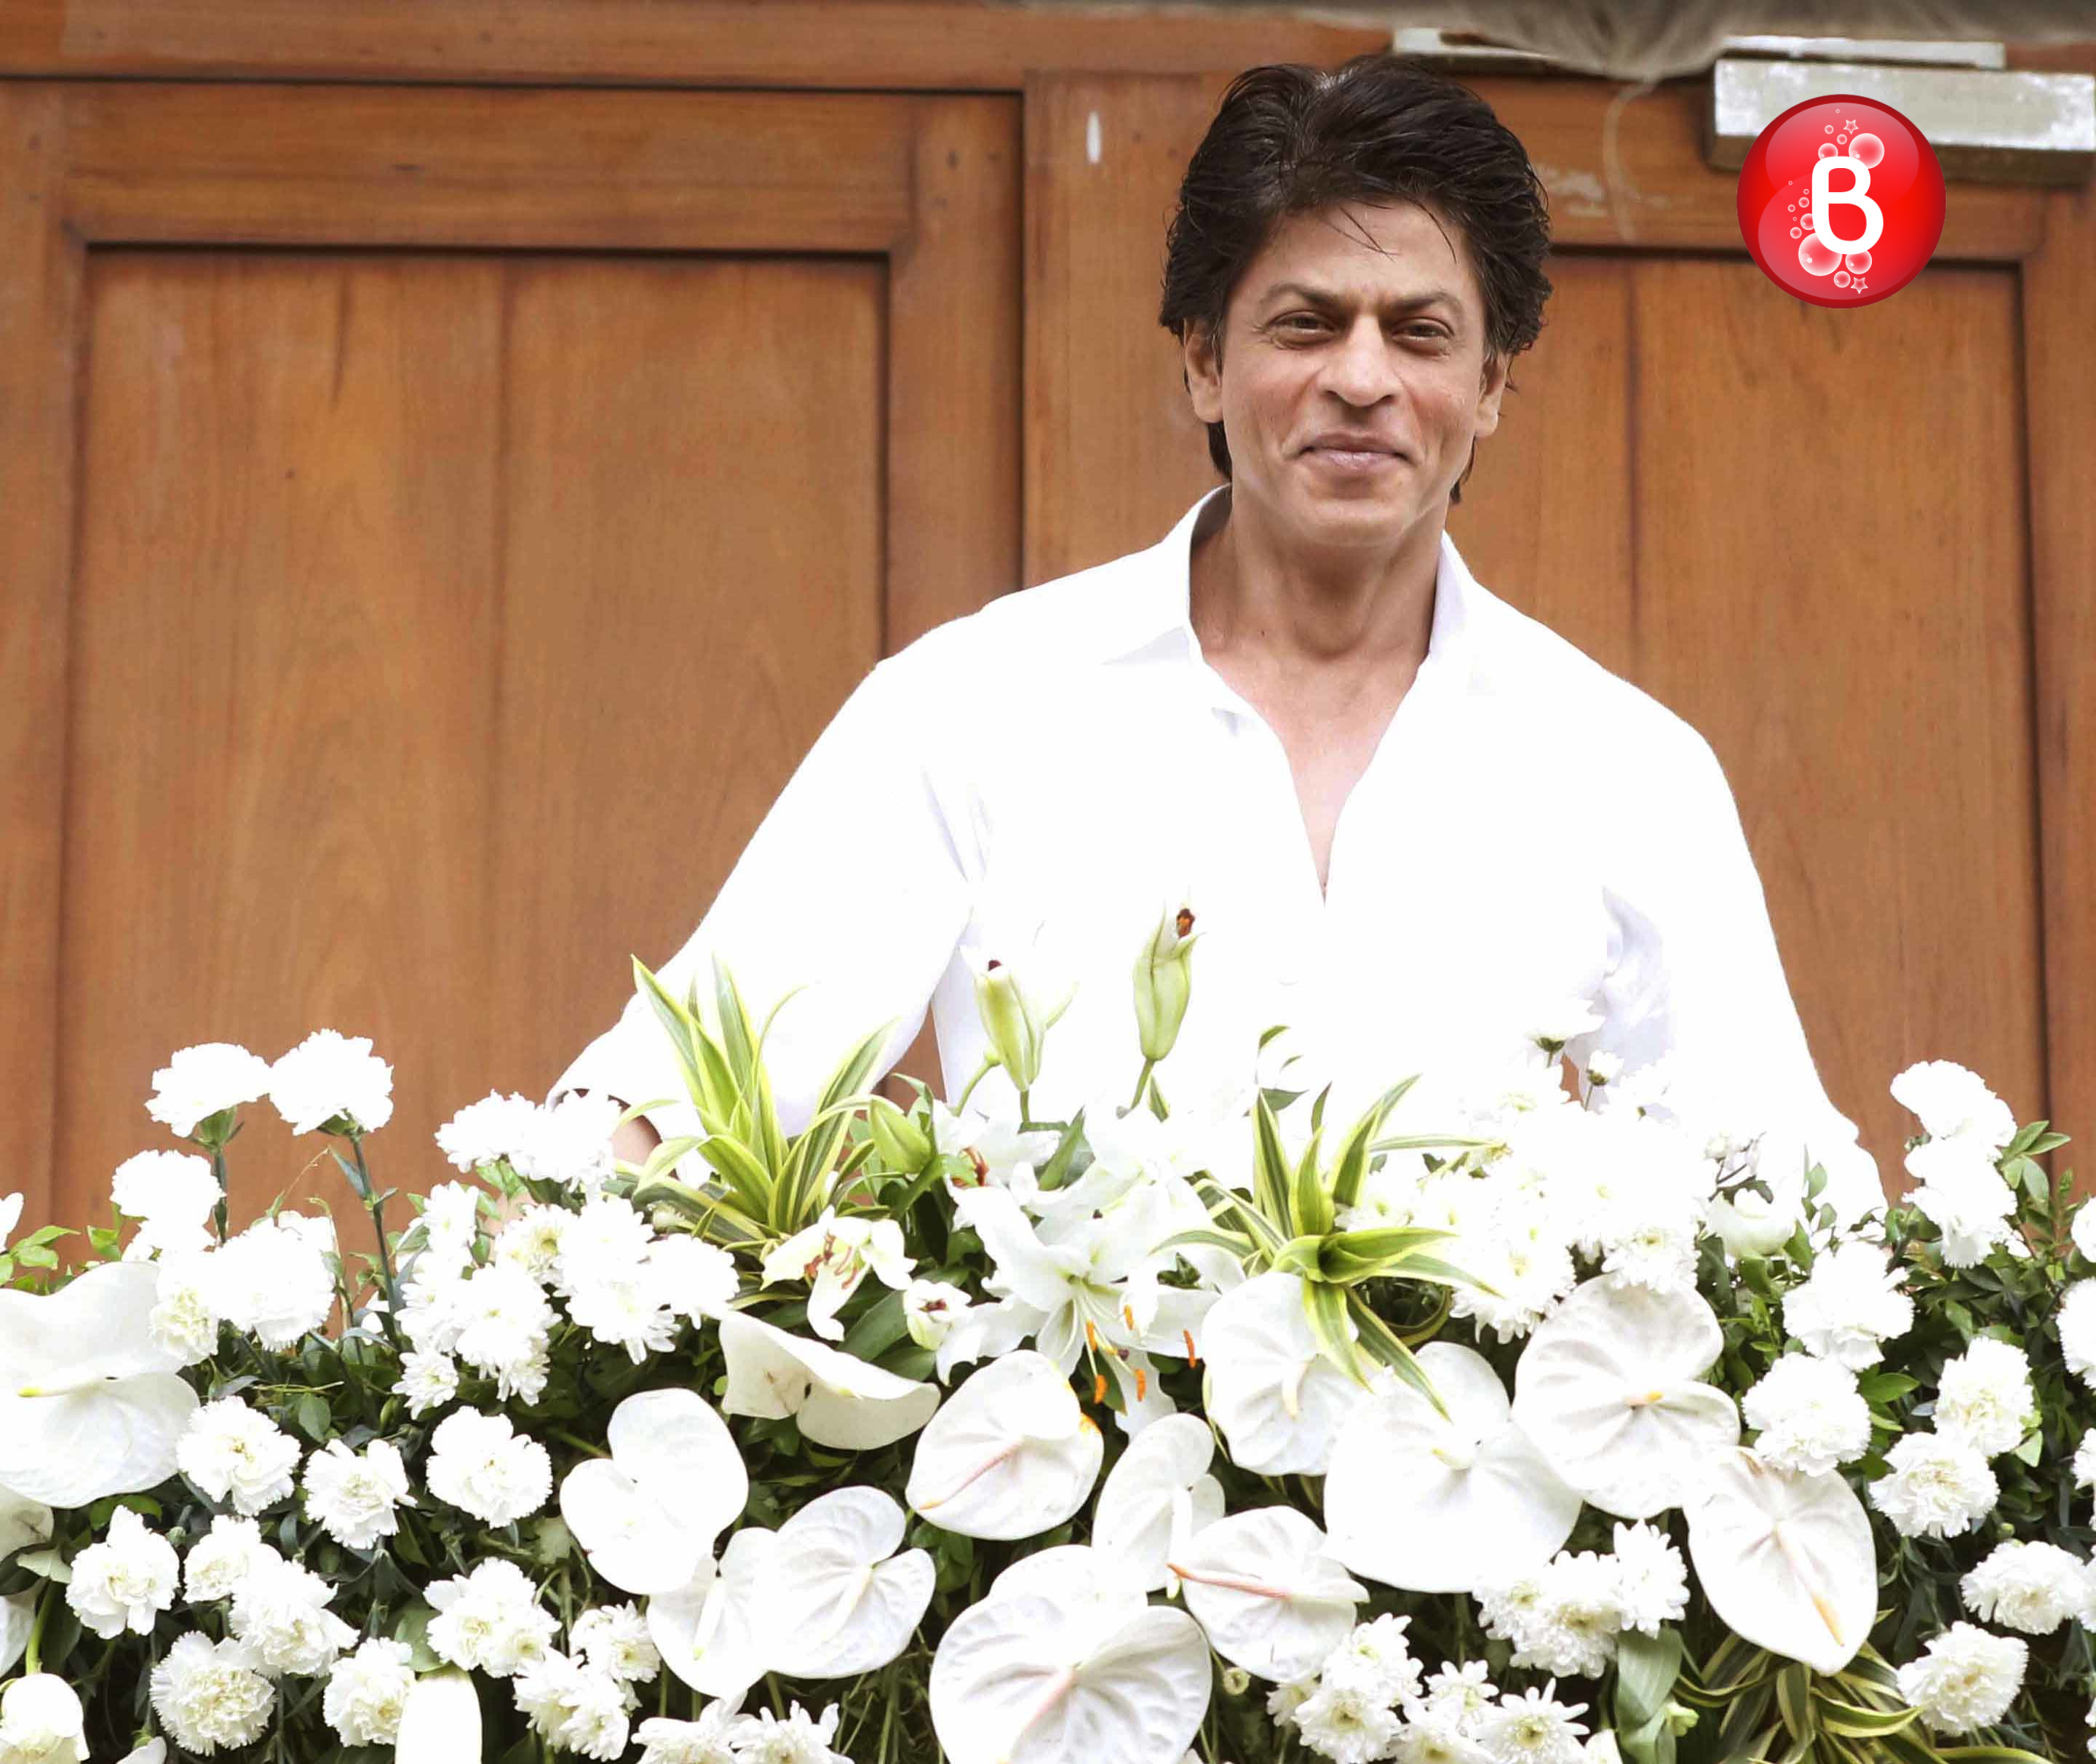 Shah Rukh Khan celebrates Eid at Mannat